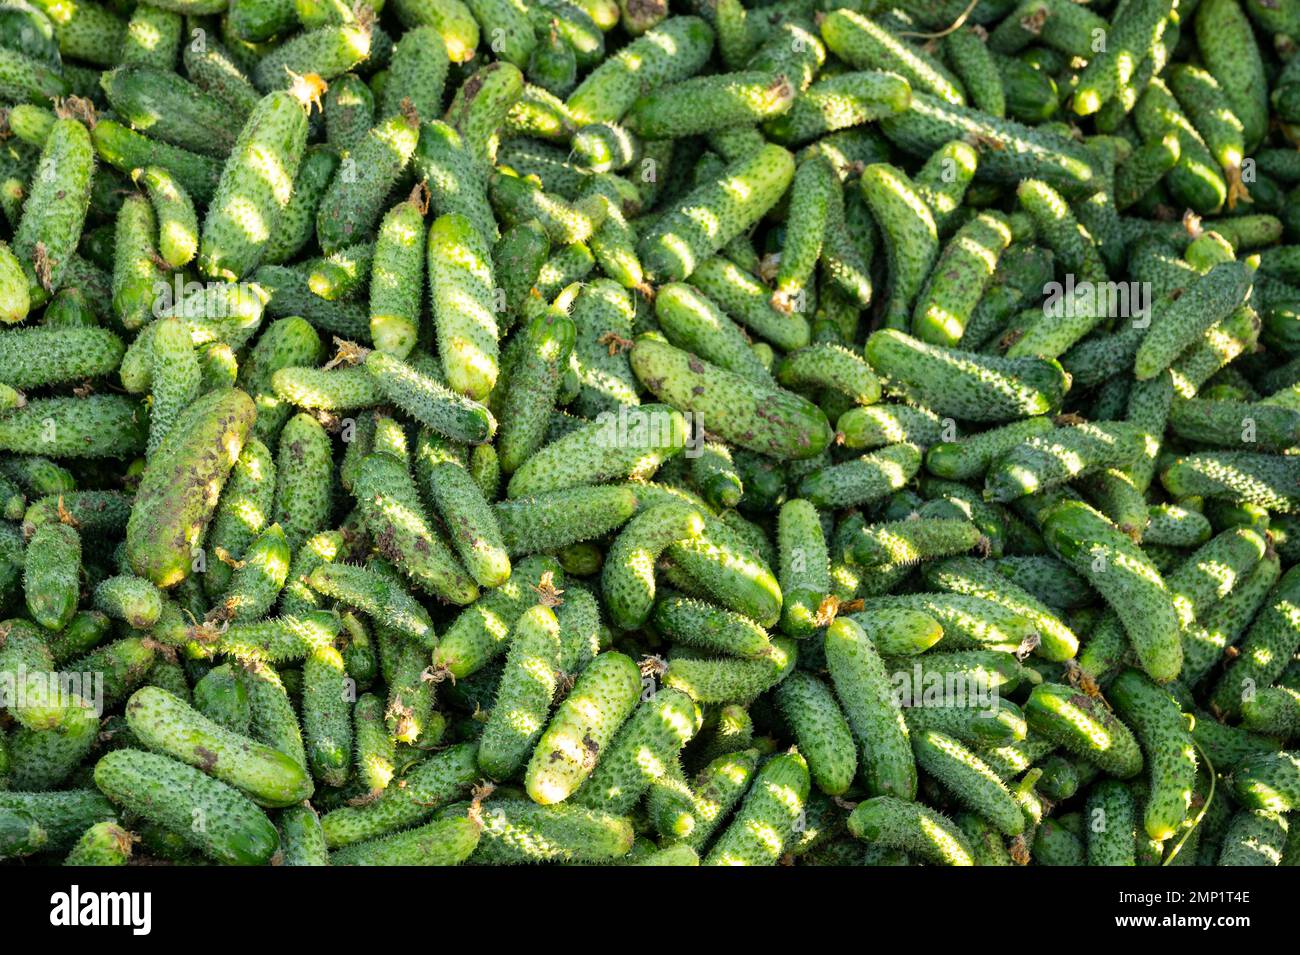 Cetrioli appena raccolti che saranno trasformati in gerkhini sottaceto da Maison Marc, Francia Foto Stock